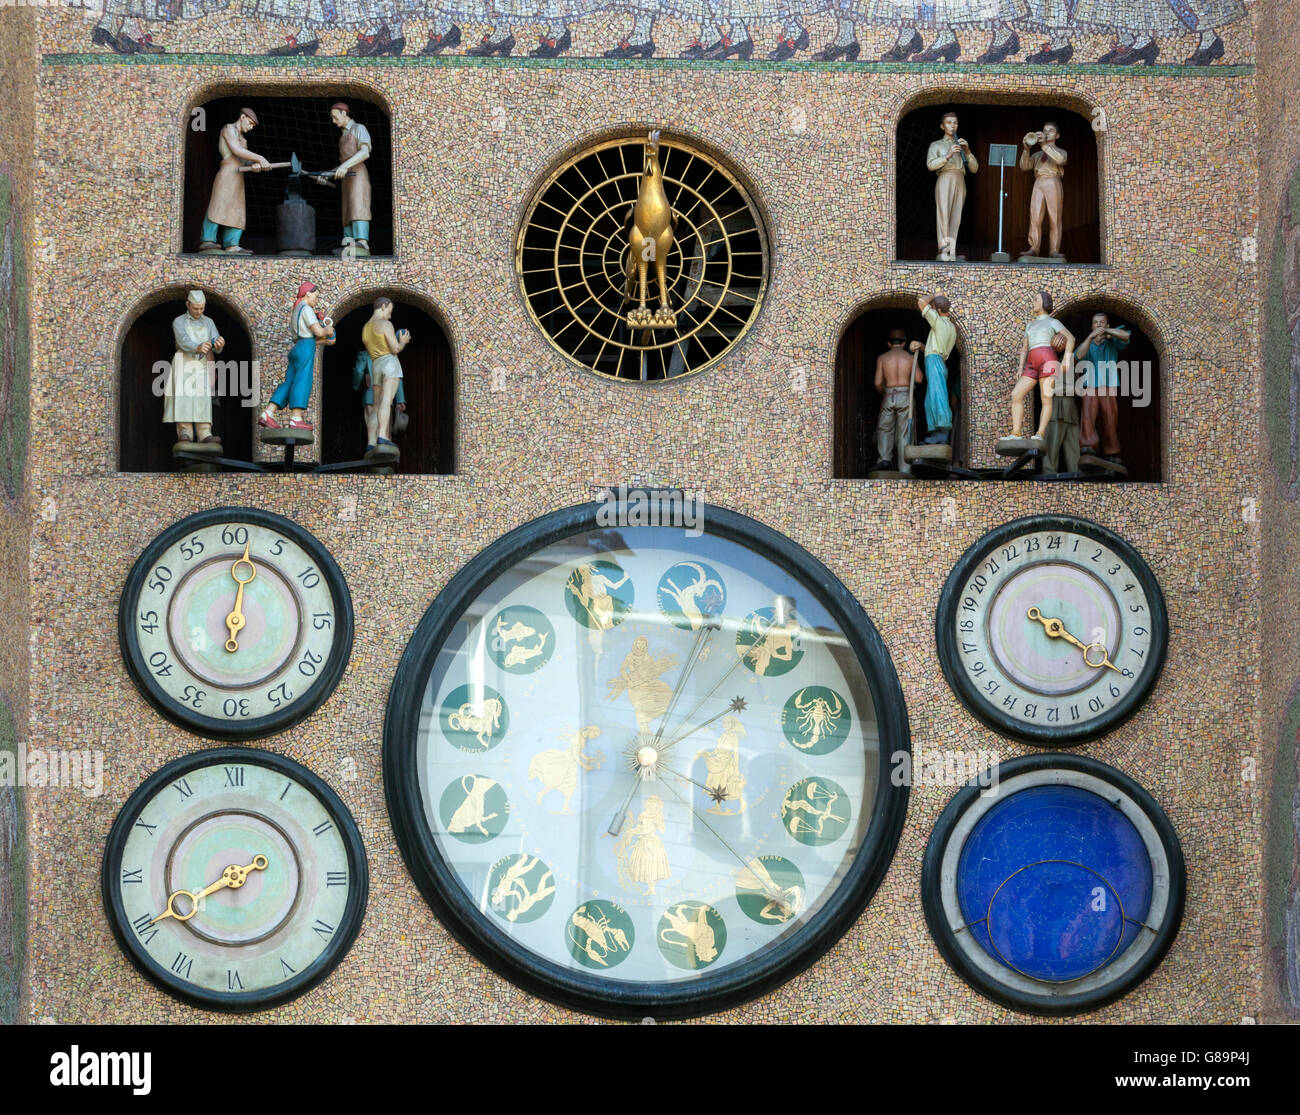 L'horloge astronomique. Cadrans et indicateurs de temps. Olomouc Moravie, République tchèque, Europe Banque D'Images